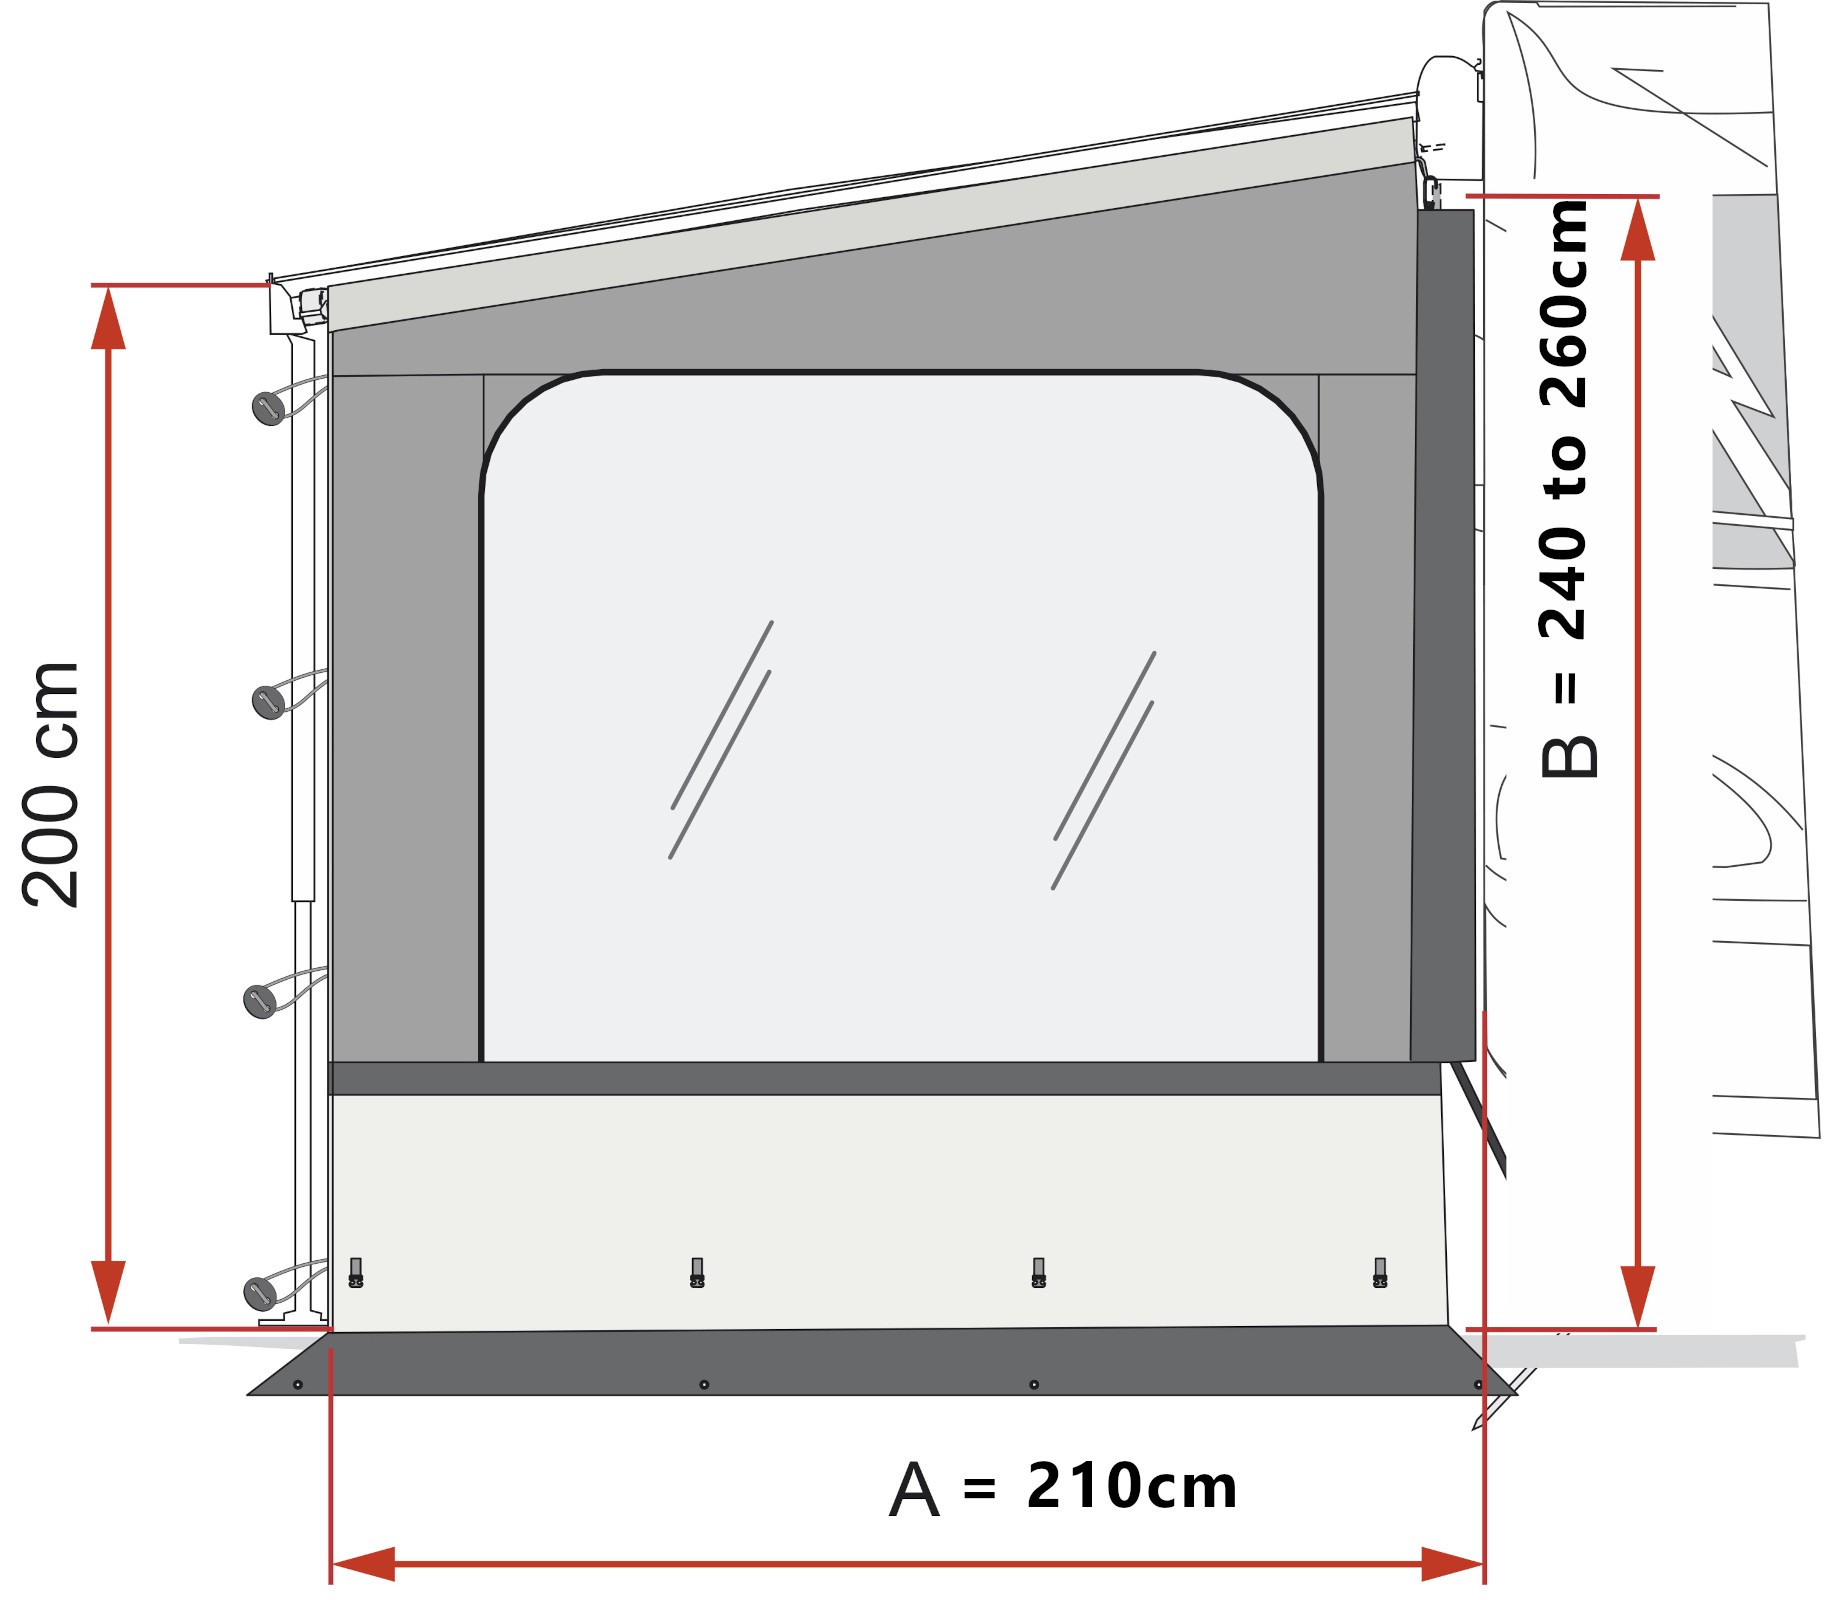 Fiamma Side W Pro Caravanstore / F35 Dimensions